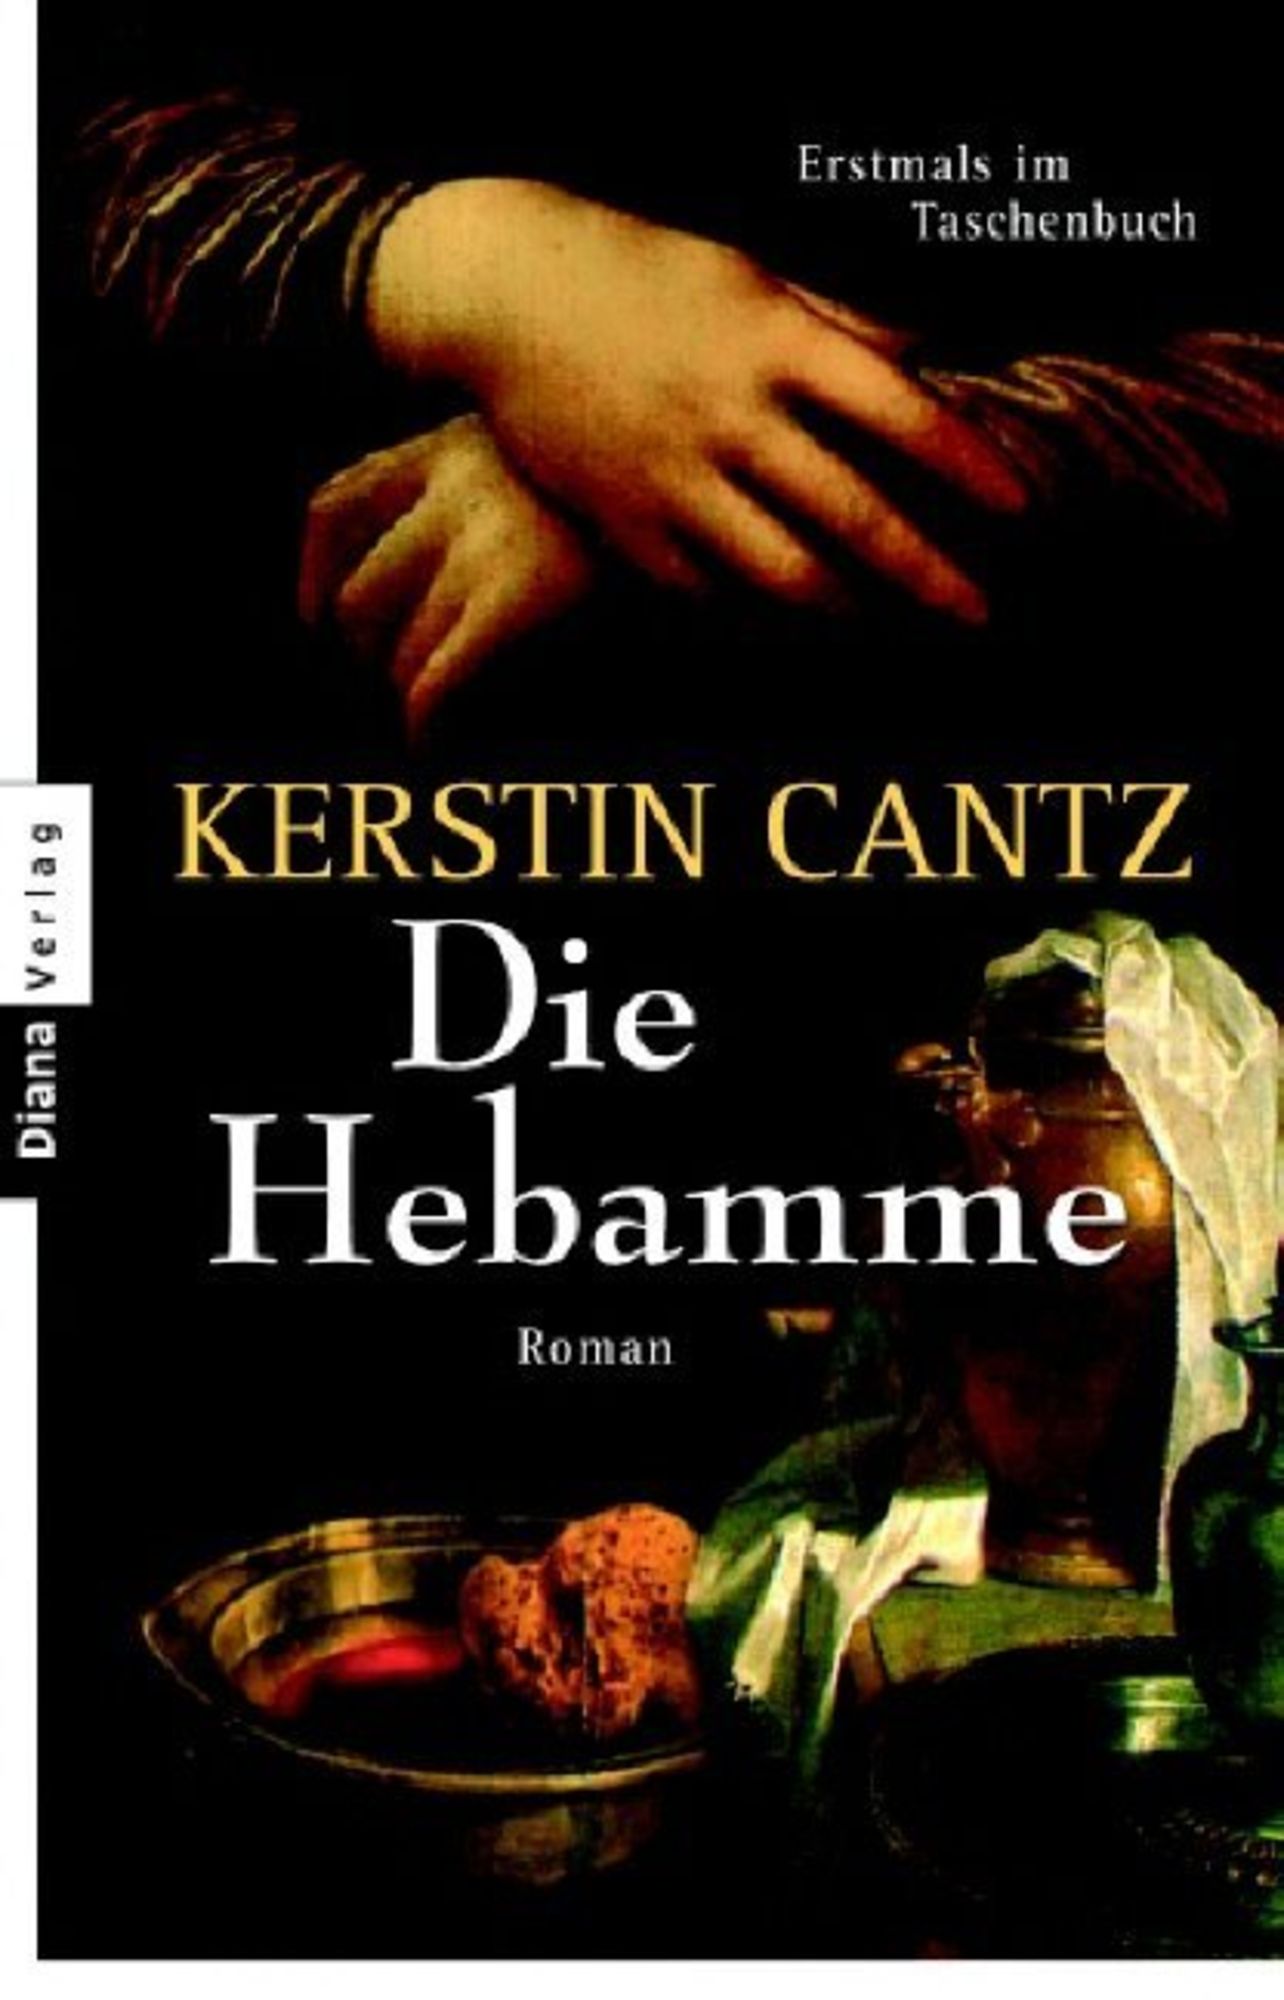 Die Hebamme von Kerstin Cantz - Buch | Thalia